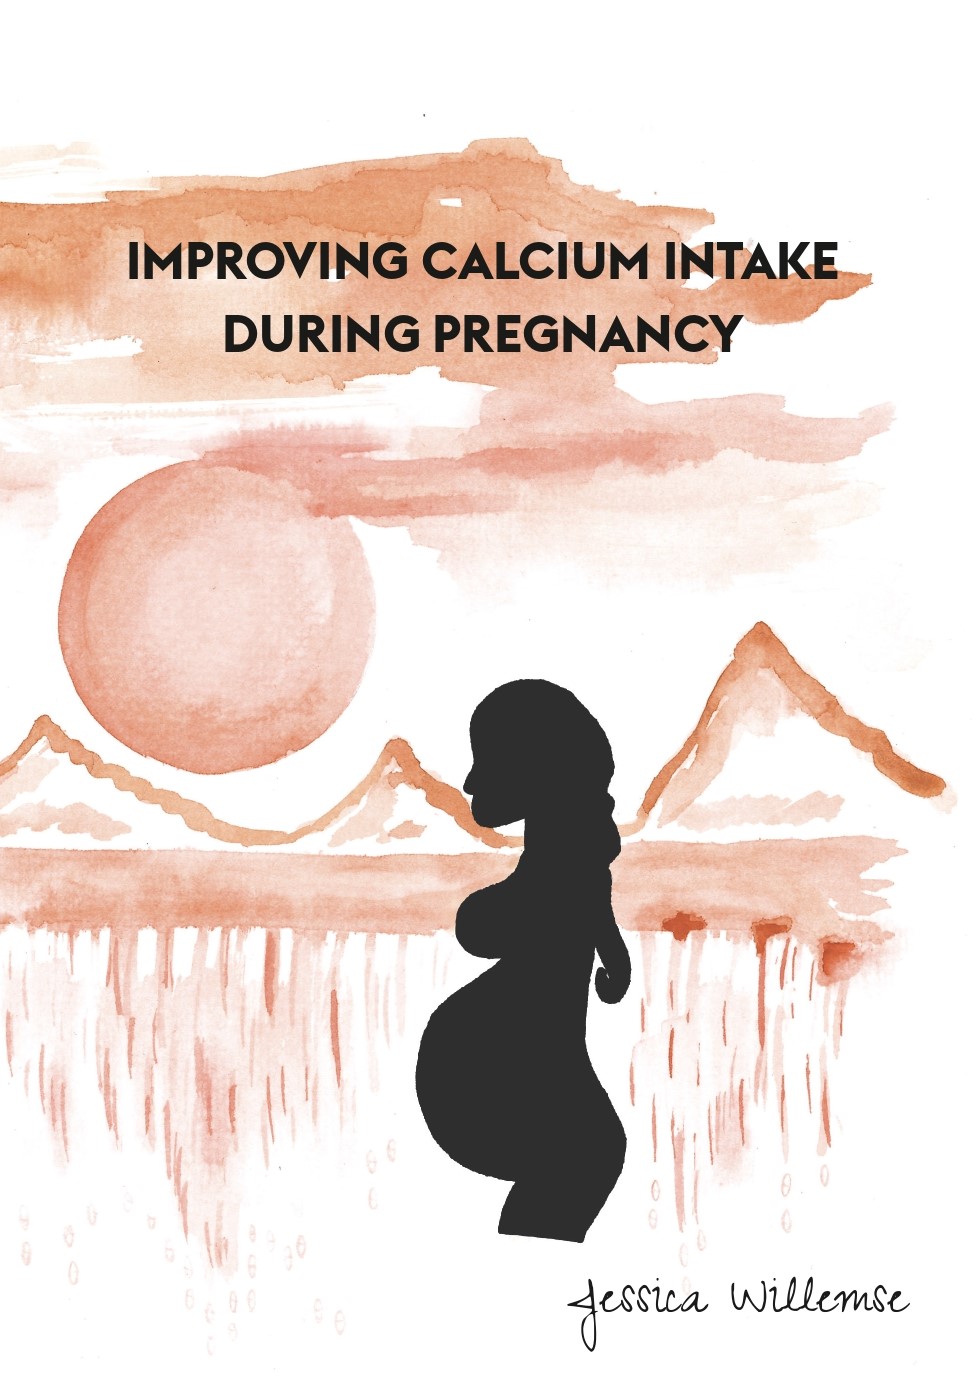 Voldoende calciuminname tijdens zwangerschap: beter voor moeder en kind!